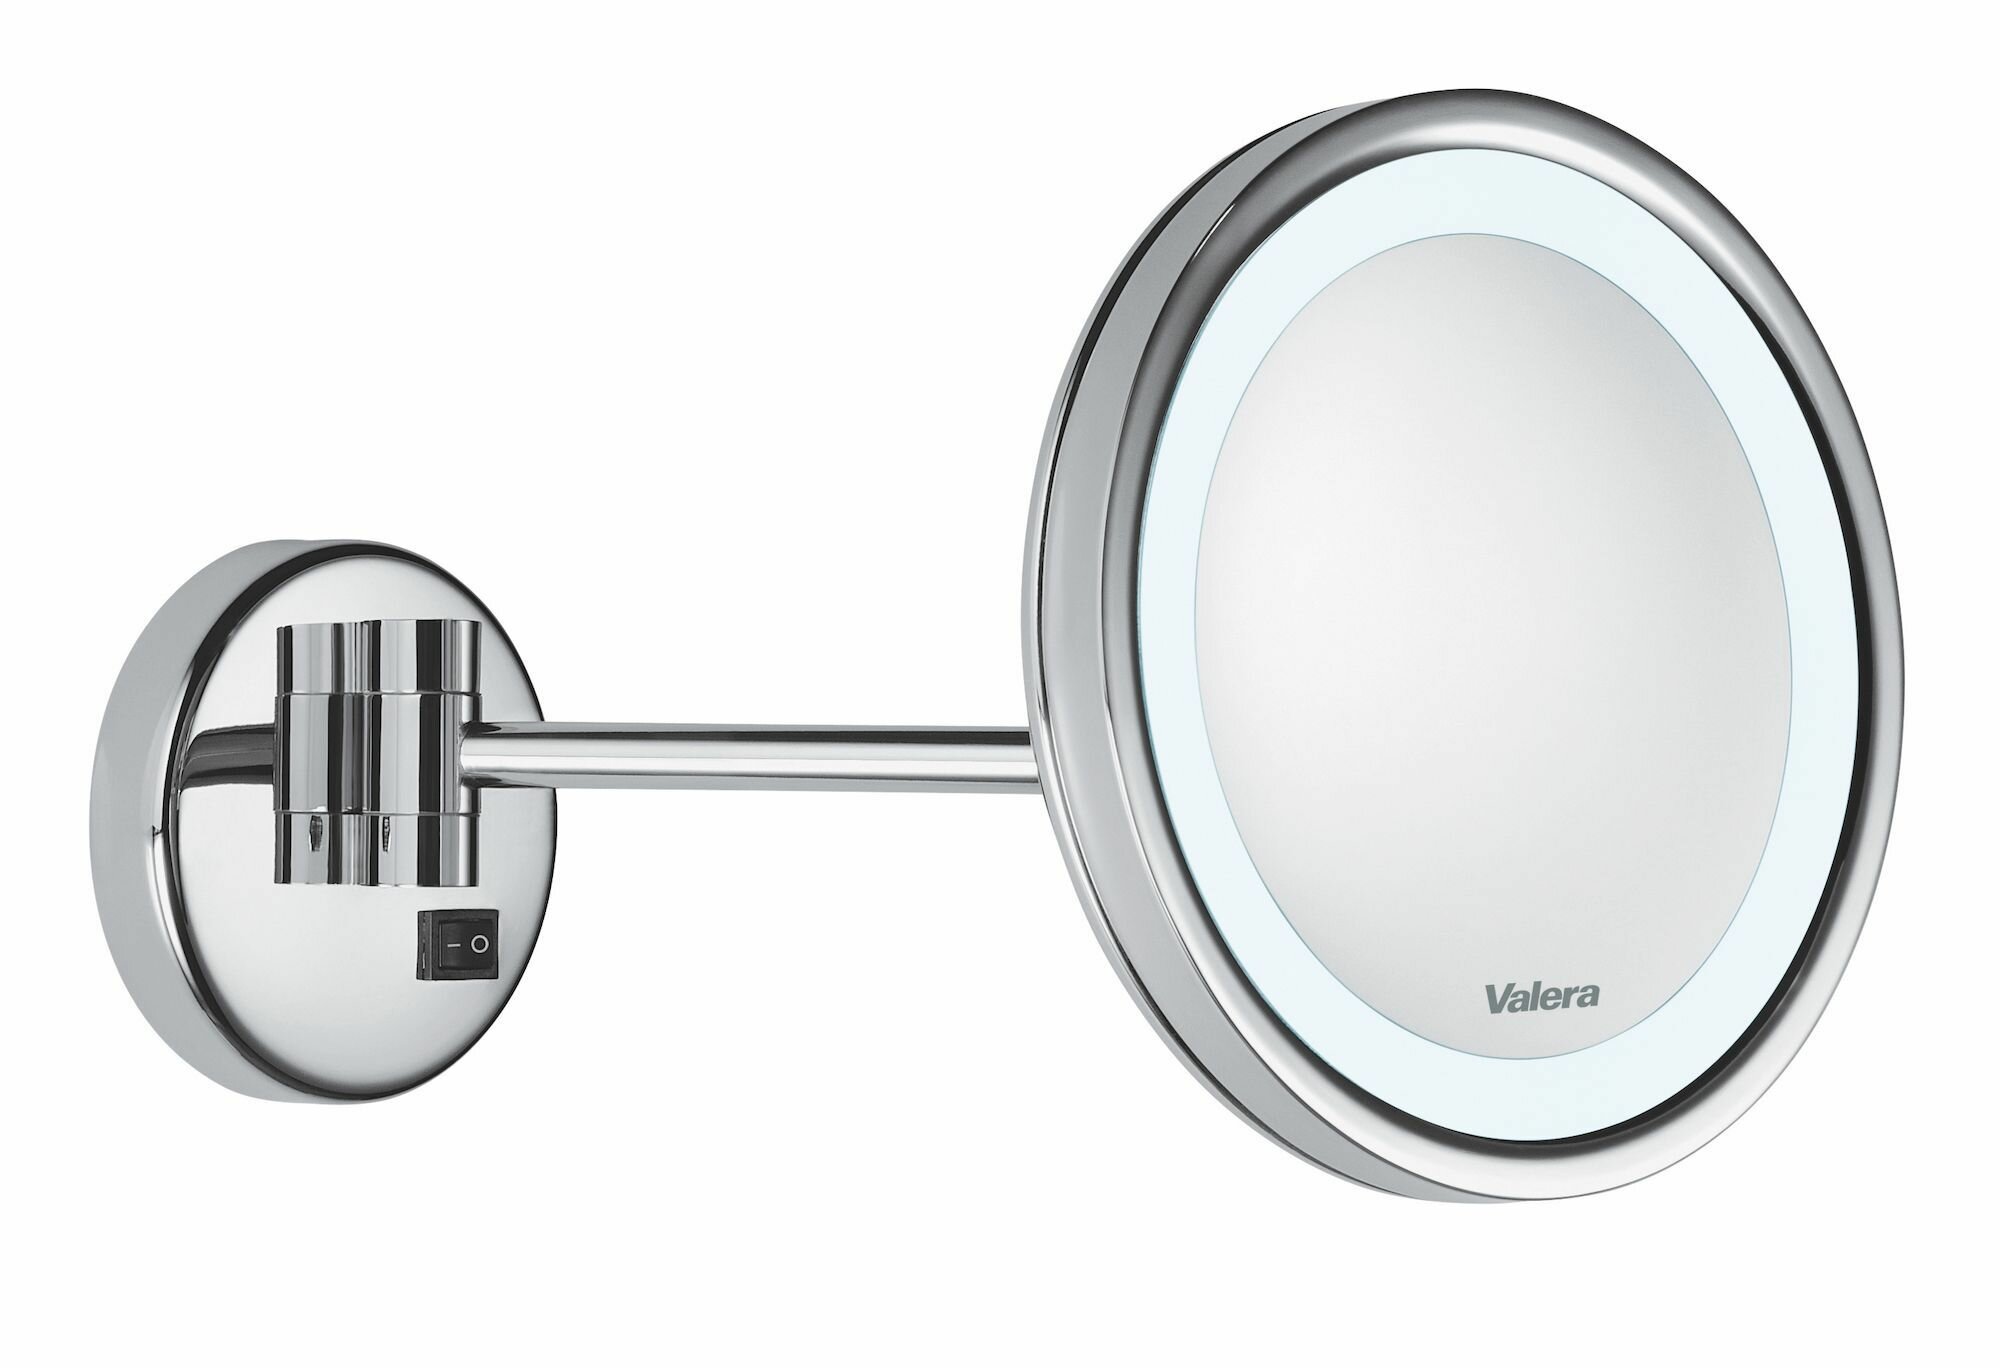 Зеркало настенное Valera Hospitality Optima Light One (207.05), трехкратное увеличение, подсветка, поворот 360, хромированное покрытие